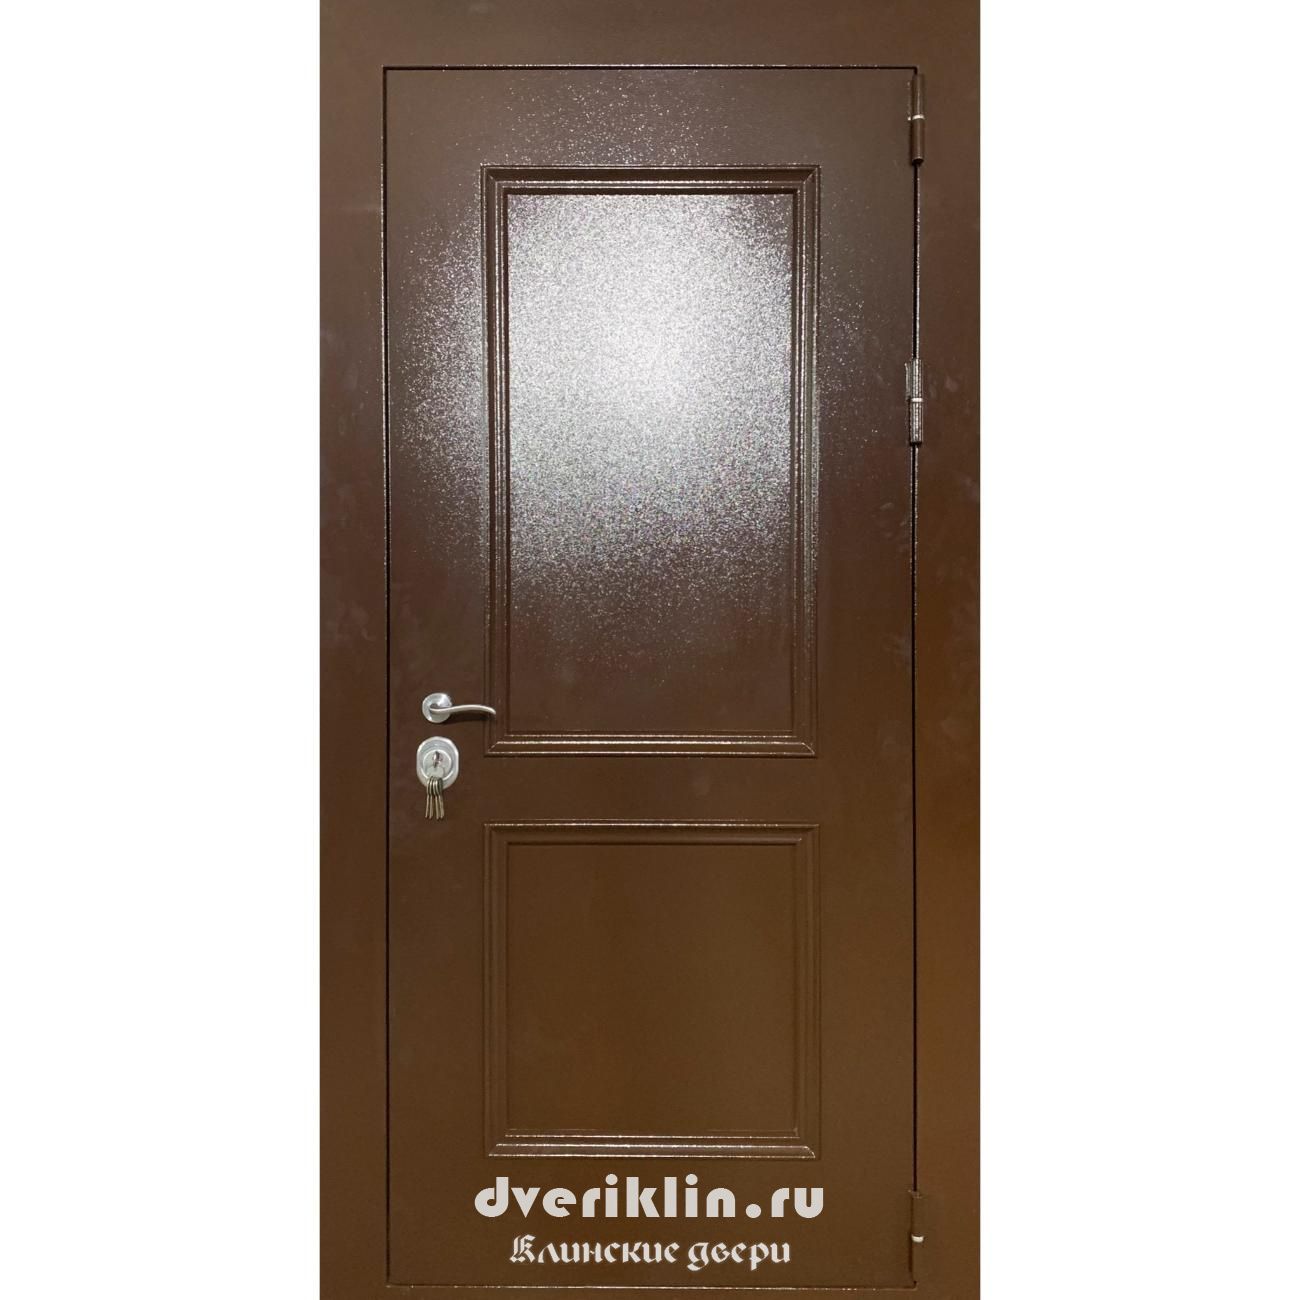 Дверь с рисунком на металле DPR-02 (С рисунком на металле)